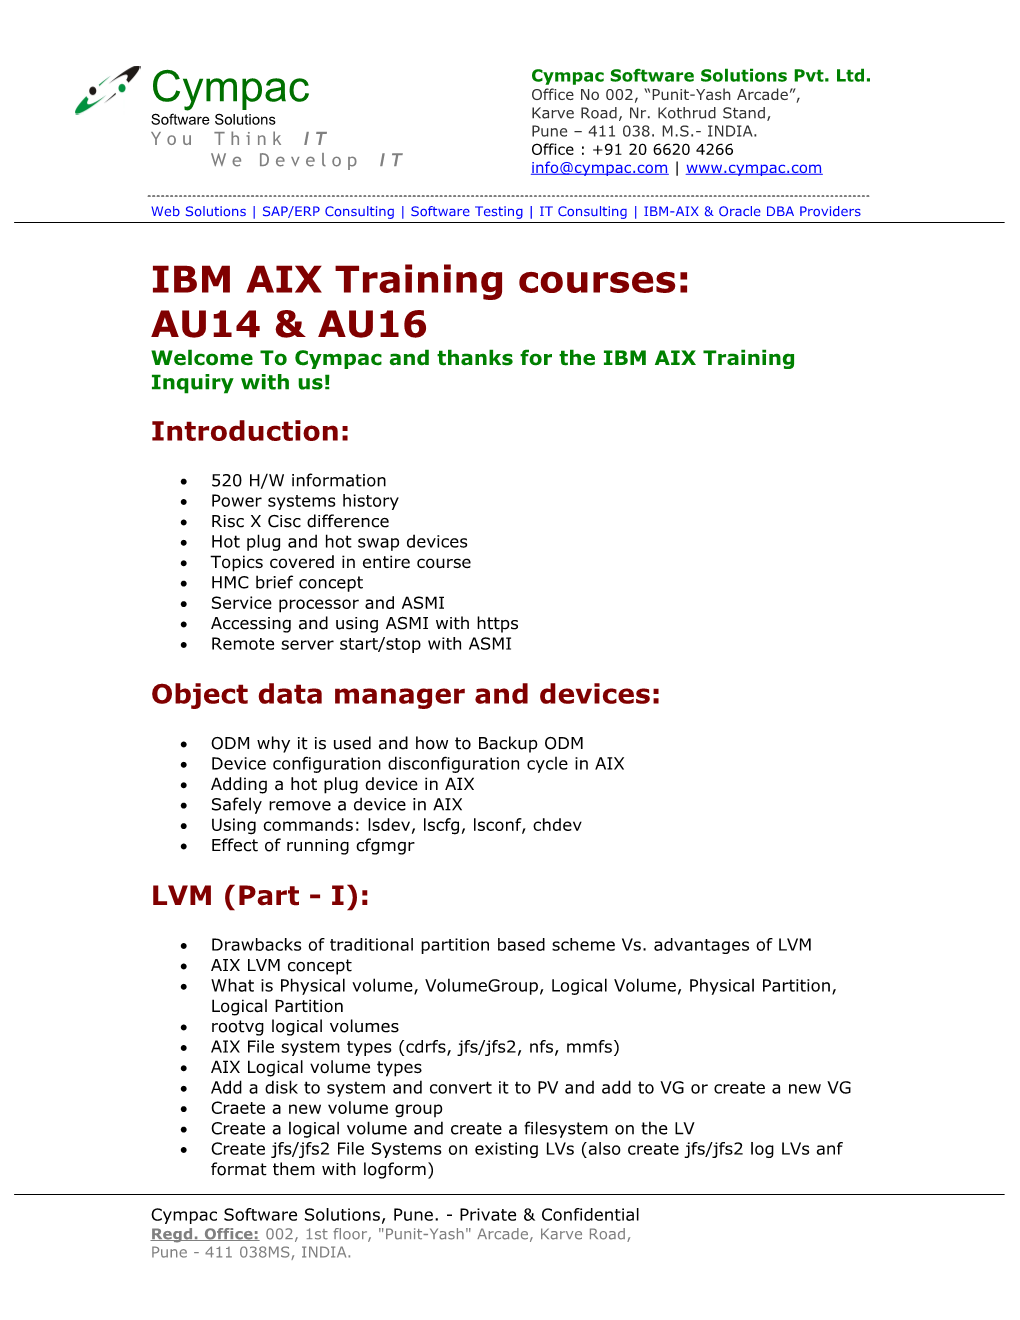 IBM AIX Training Courses